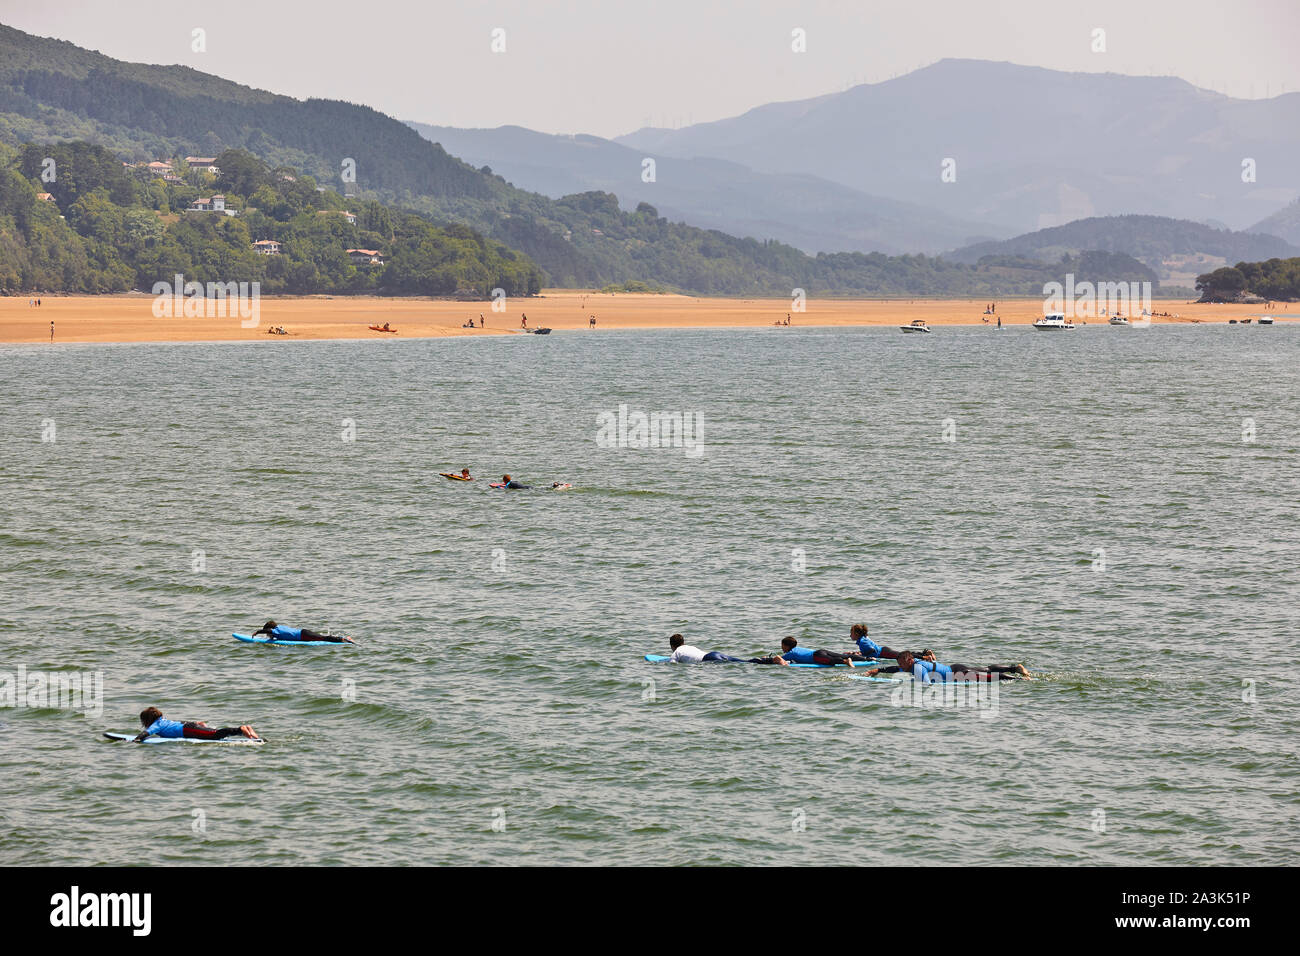 Surf for beginners in Euskadi coastline. Mundaka beach. Urdaibai, Spain Stock Photo